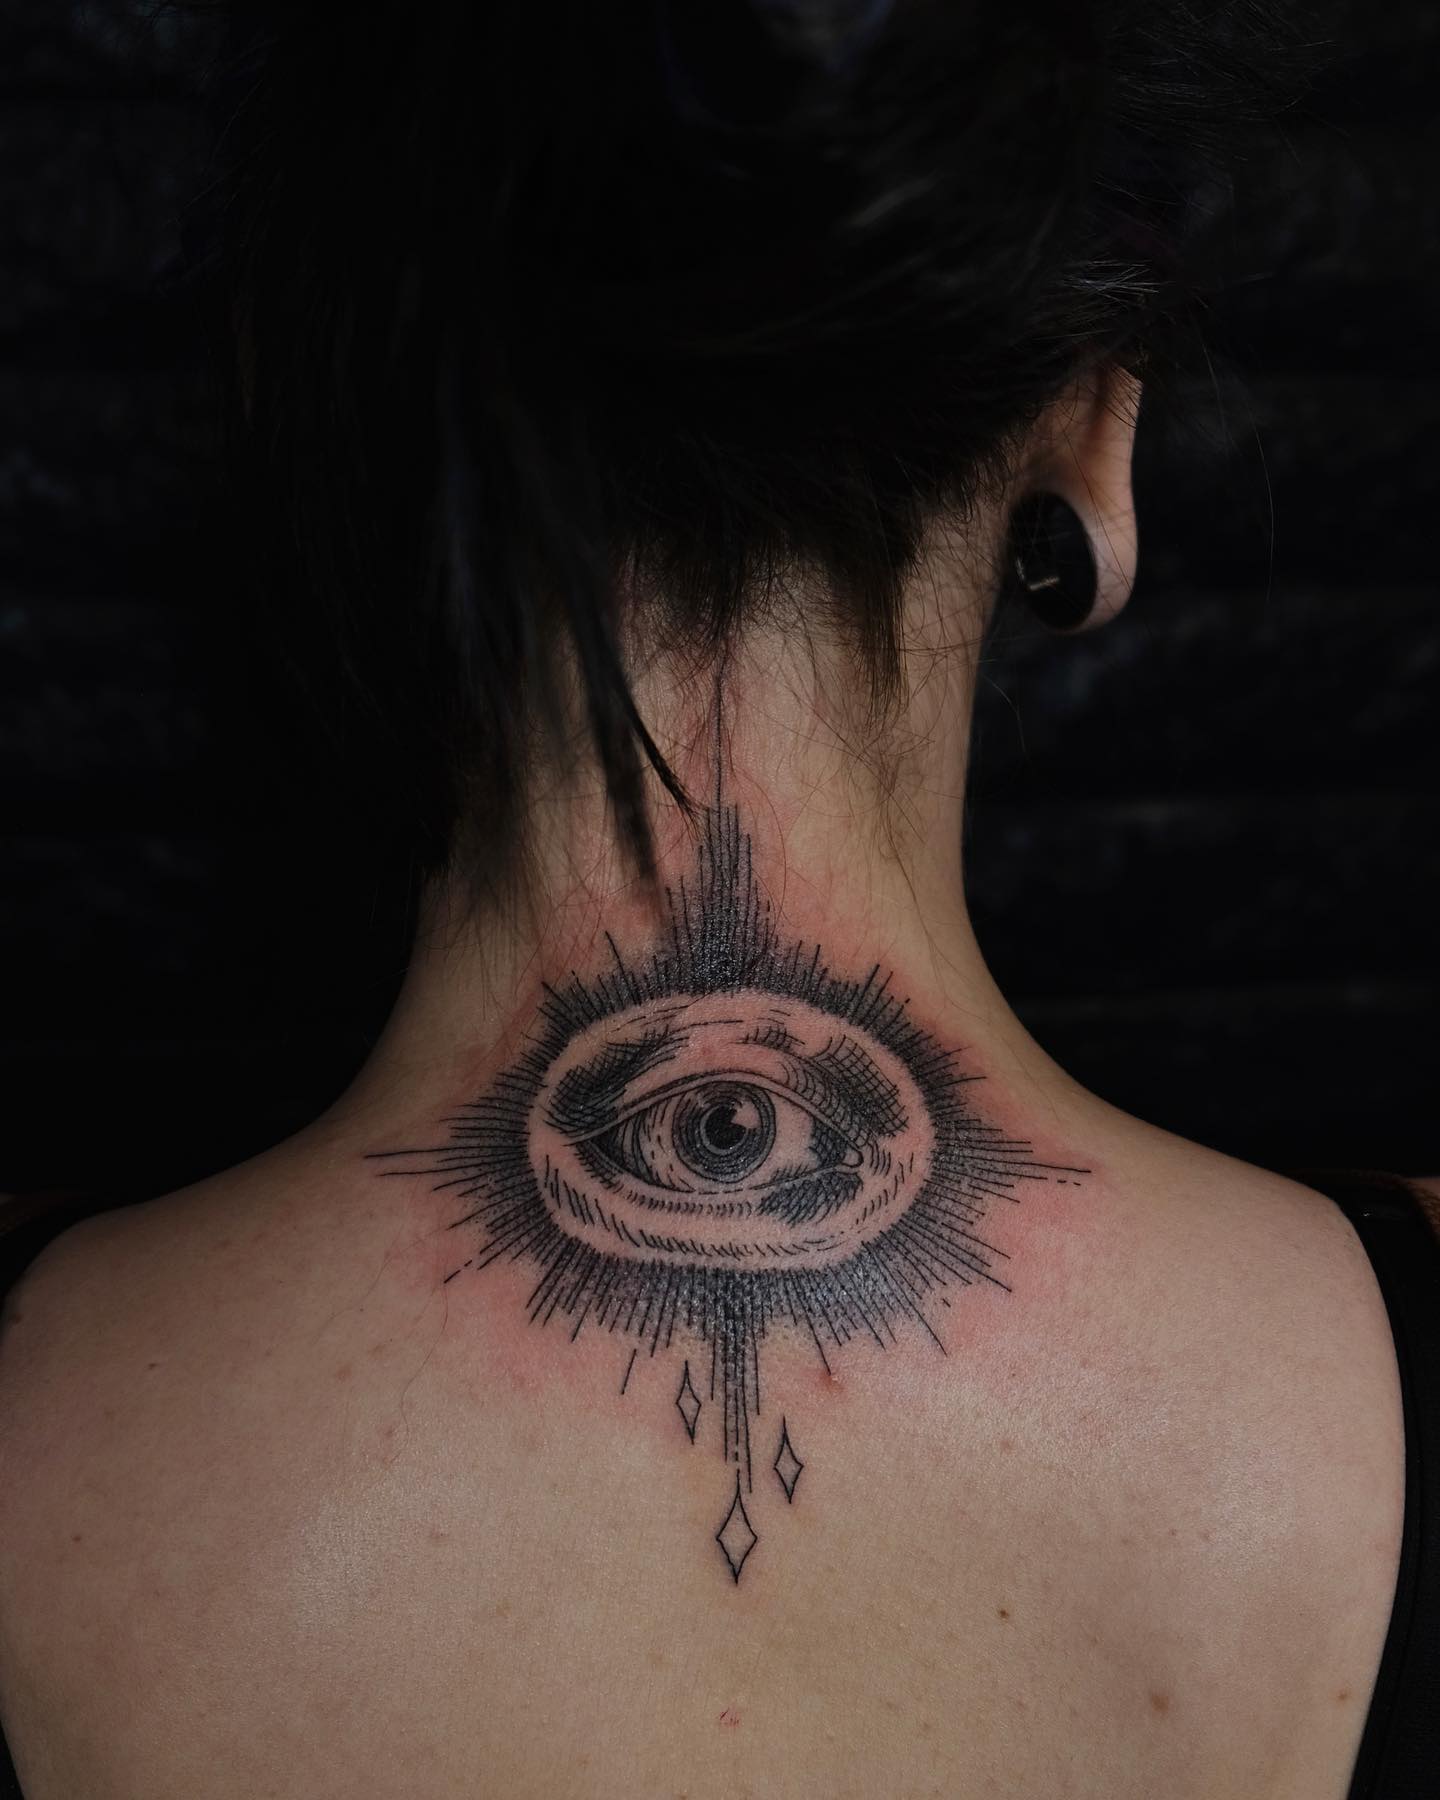 Tatuaje del ojo que todo lo ve en tinta negra en la espalda